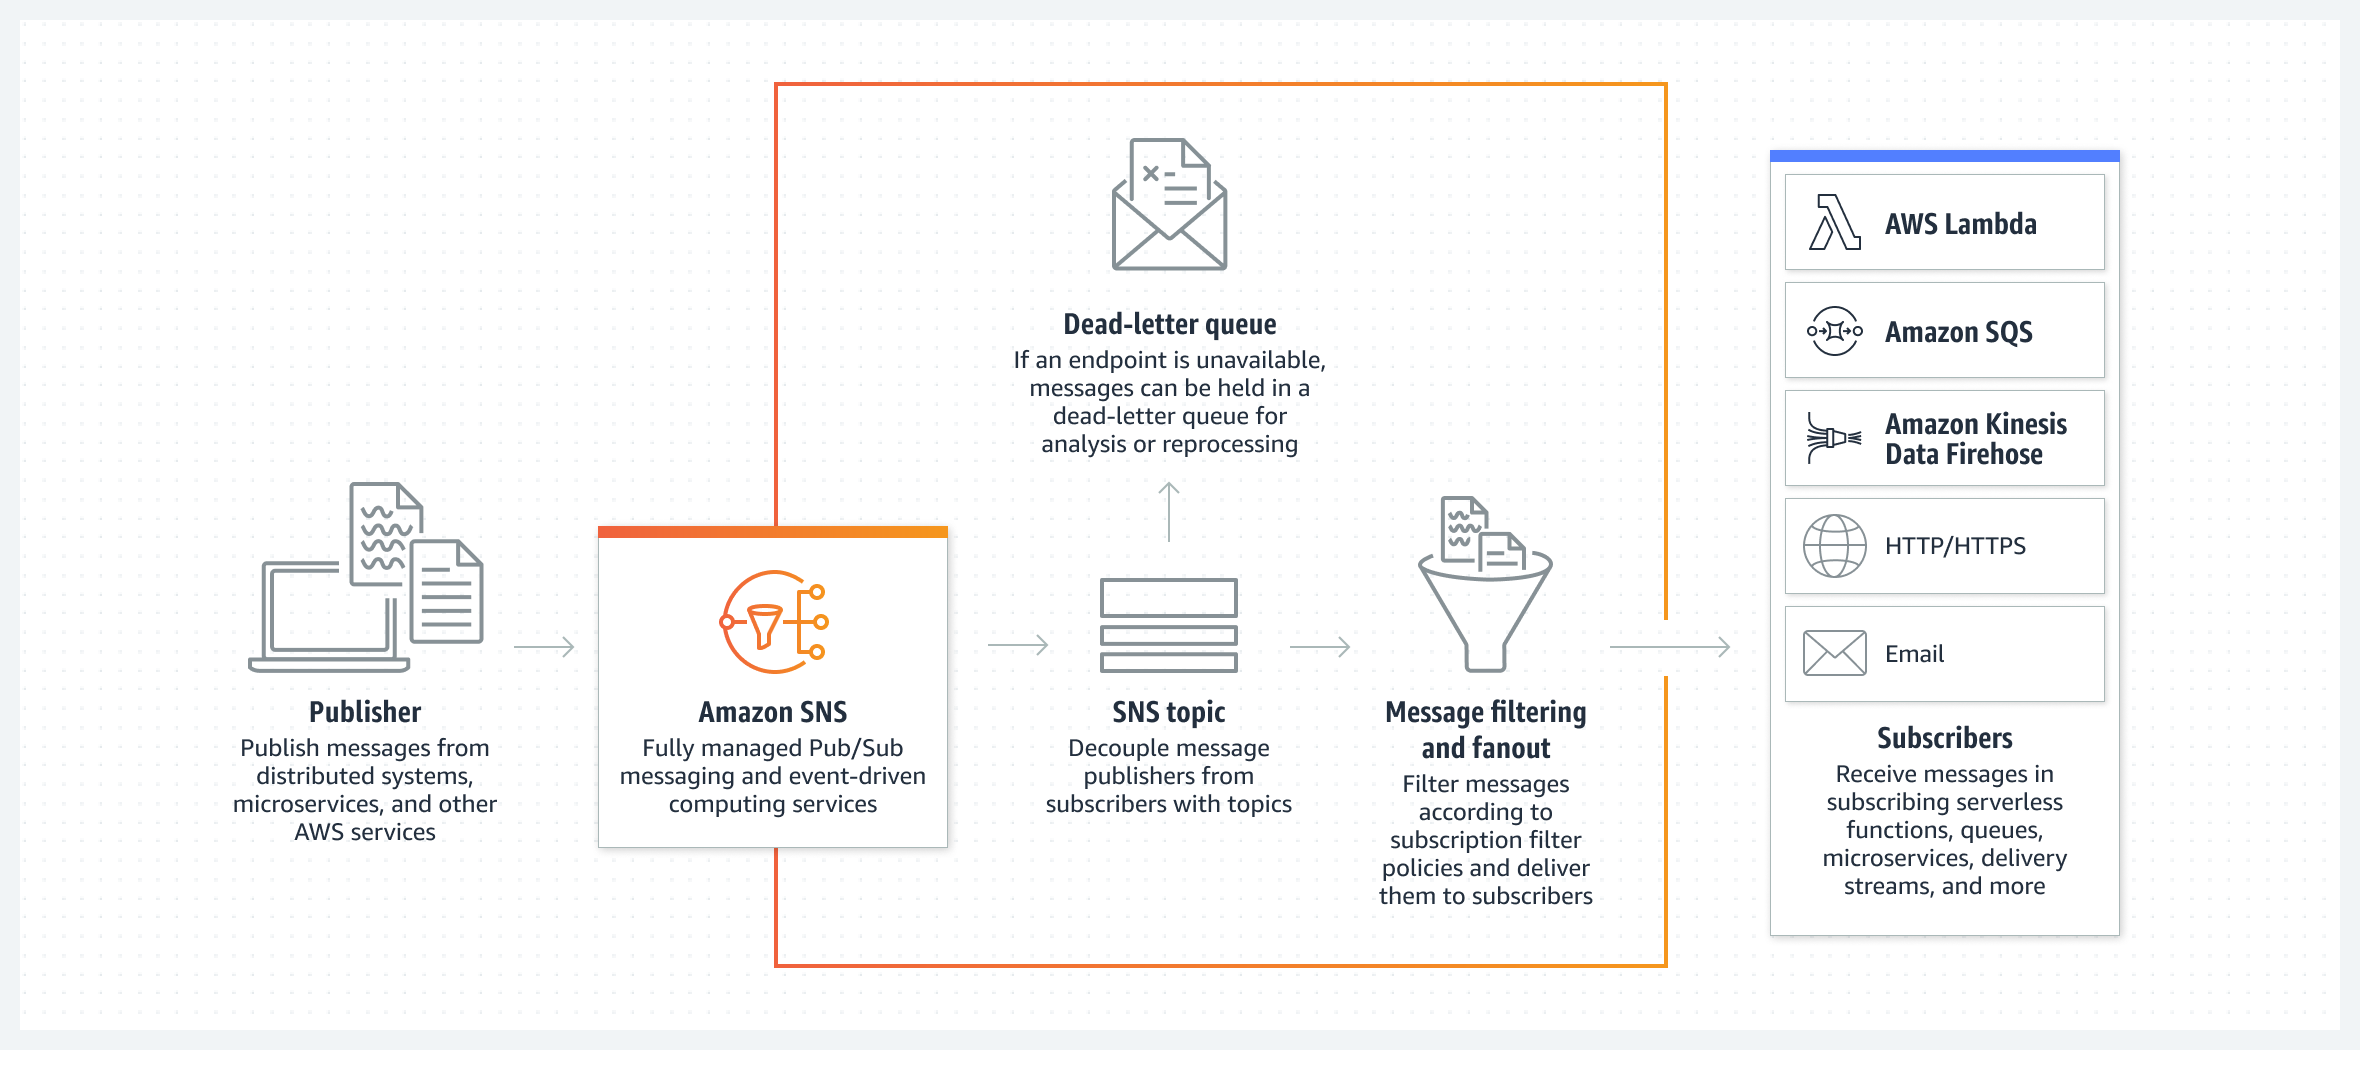 رسم تخطيطي يوضح كيف تقوم الخدمة Amazon SNS بإرسال الرسائل حسب الموضوع وكيف توزّعها على أنظمة المشتركين. 